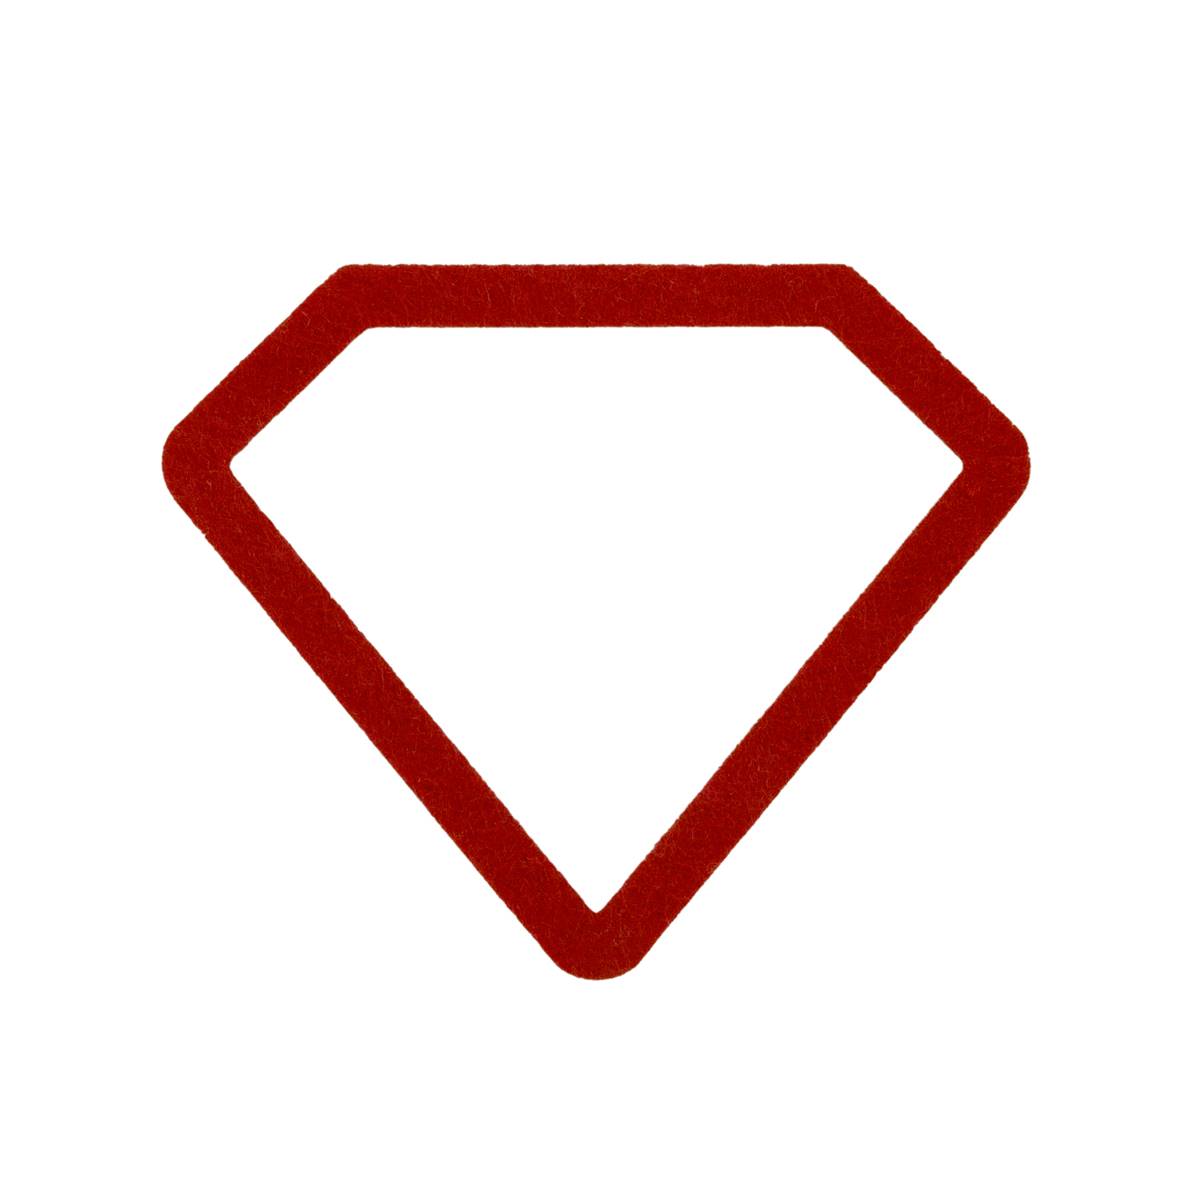 Warner Bros. Superman(tm) Milestone Baby Blanket